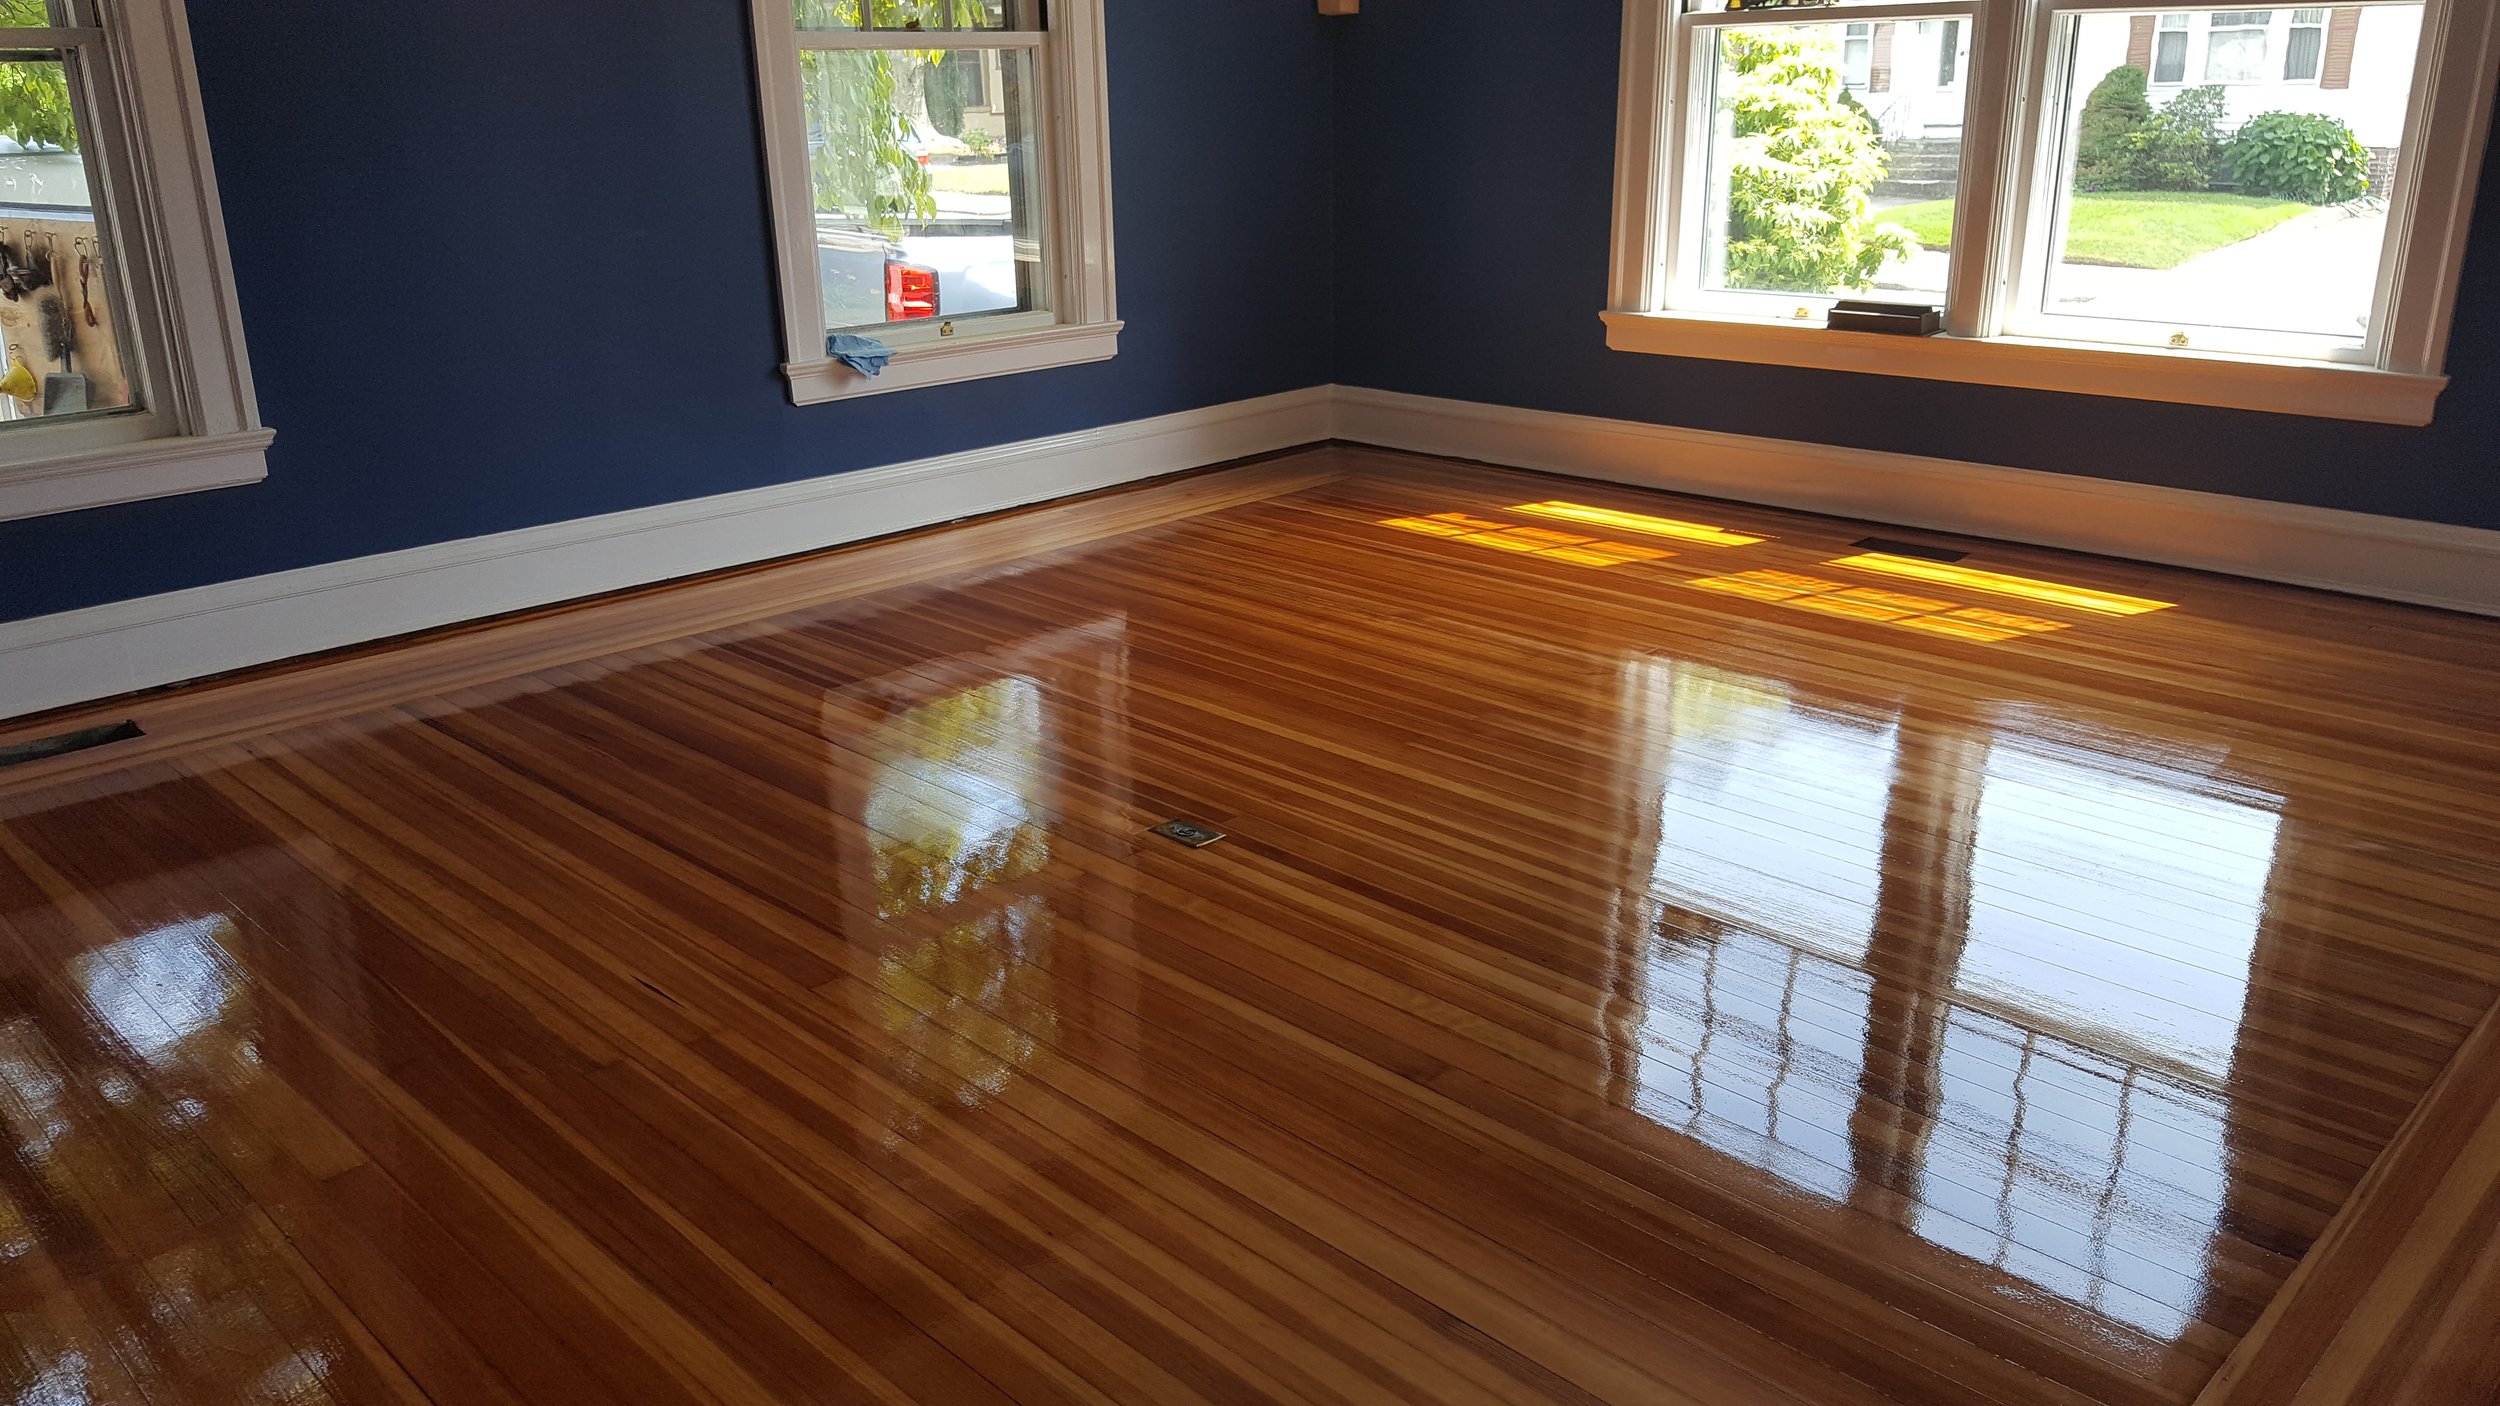 Renaissance Floor Refinishing, High Gloss Finish For Hardwood Floors